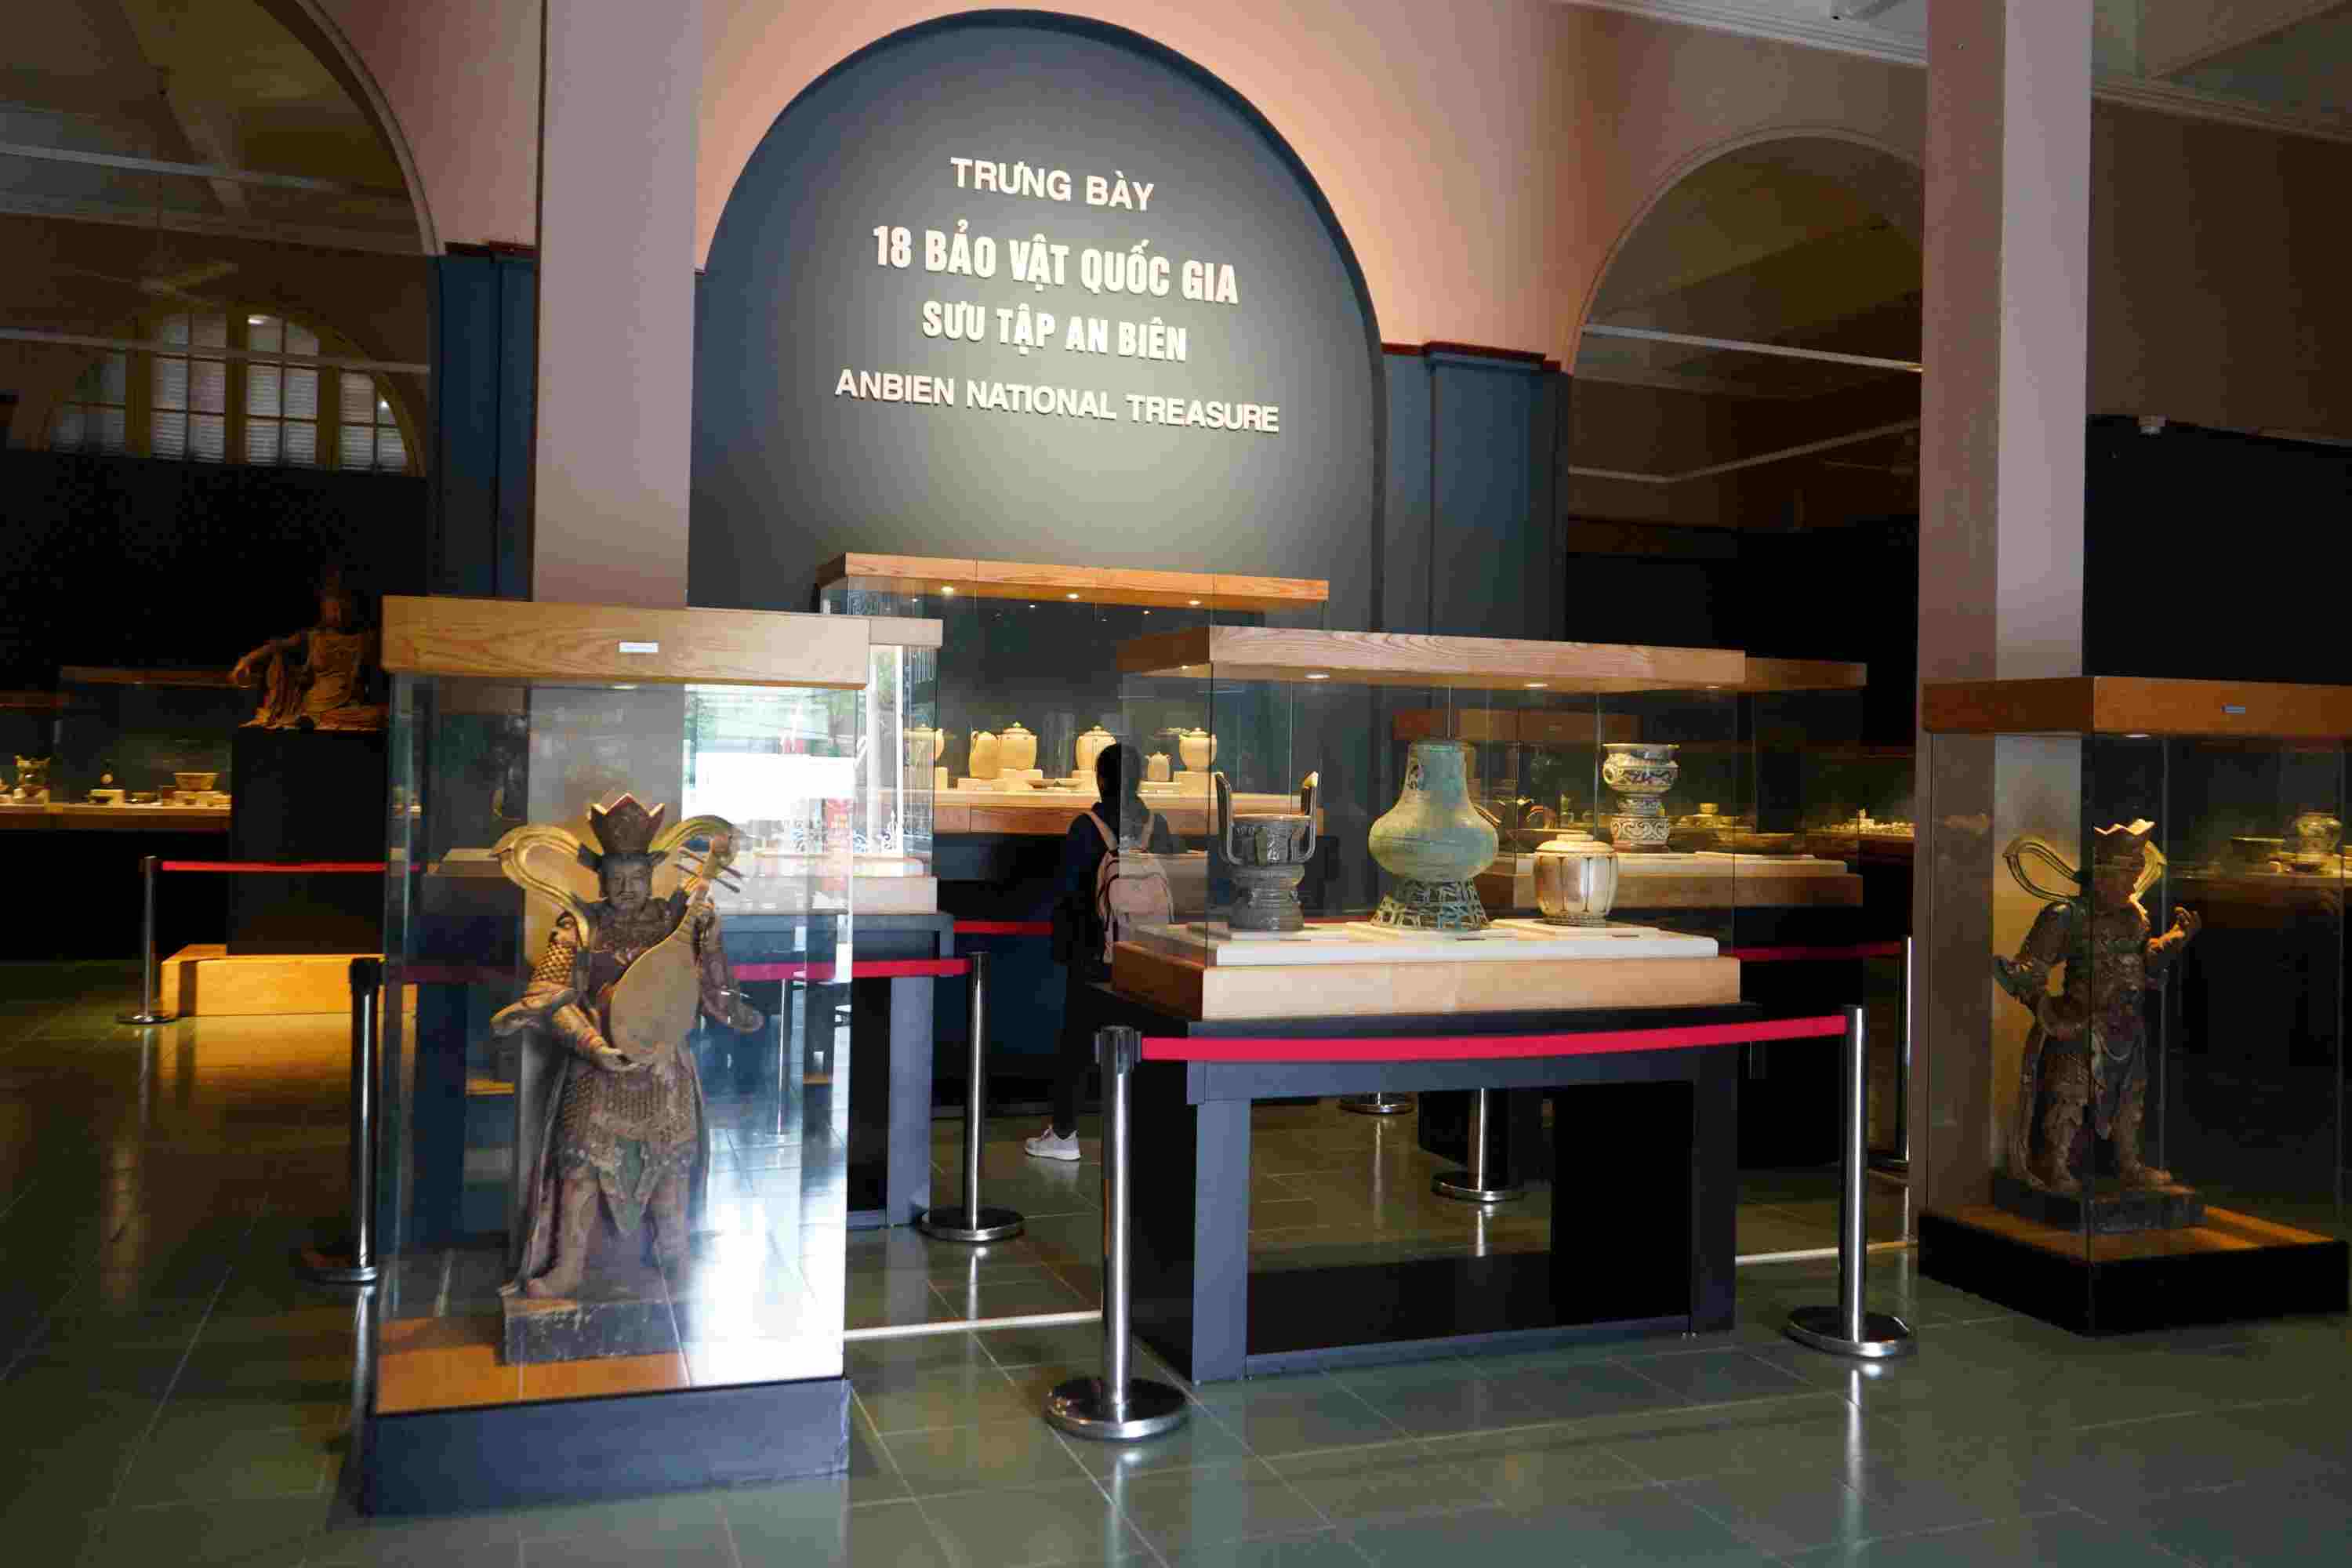 18 bảo vật quốc gia nằm trong Bộ sưu tập An Biên của ông Trần Đình Thăng (Tổng Thư ký Hội Cổ vật Hải Phòng) được trưng bày trong 4 tủ kính trang trọng tại gian chính Bảo tàng Hải Phòng.